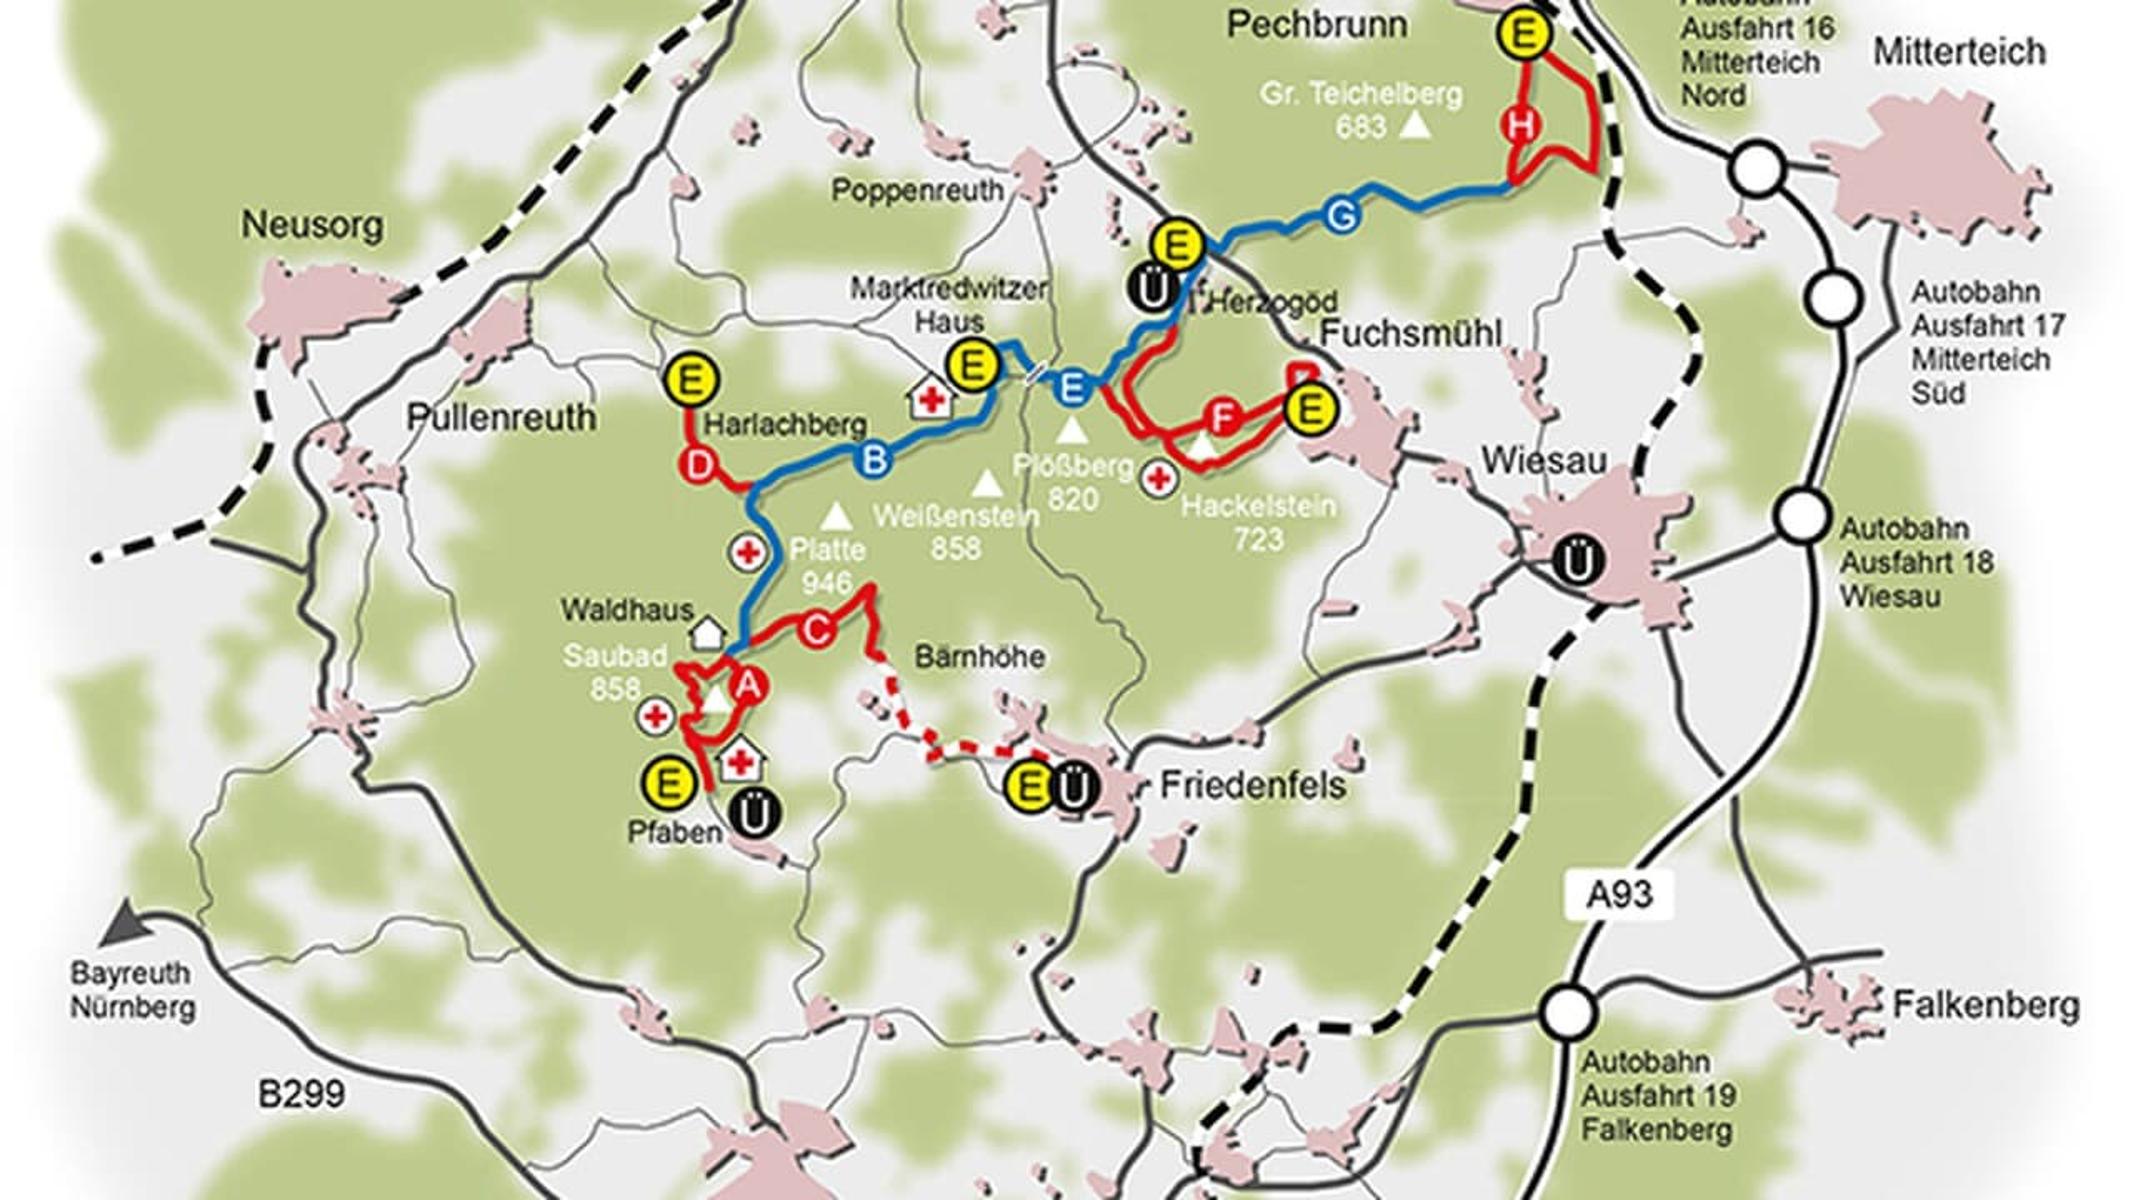 Diesermittelschwere Rundkurs führt ab dem Wanderparkplatz in Pfaben bei Erbendorfaufwärts bis zum Waldhaus (3 km) und zurück über den Saubadfelsen (2 km).Außerdem besteht am Waldhaus die Möglichkeit zum Einstieg in denSkihauptwanderweg in Richtung nördlicher Steinwald. 